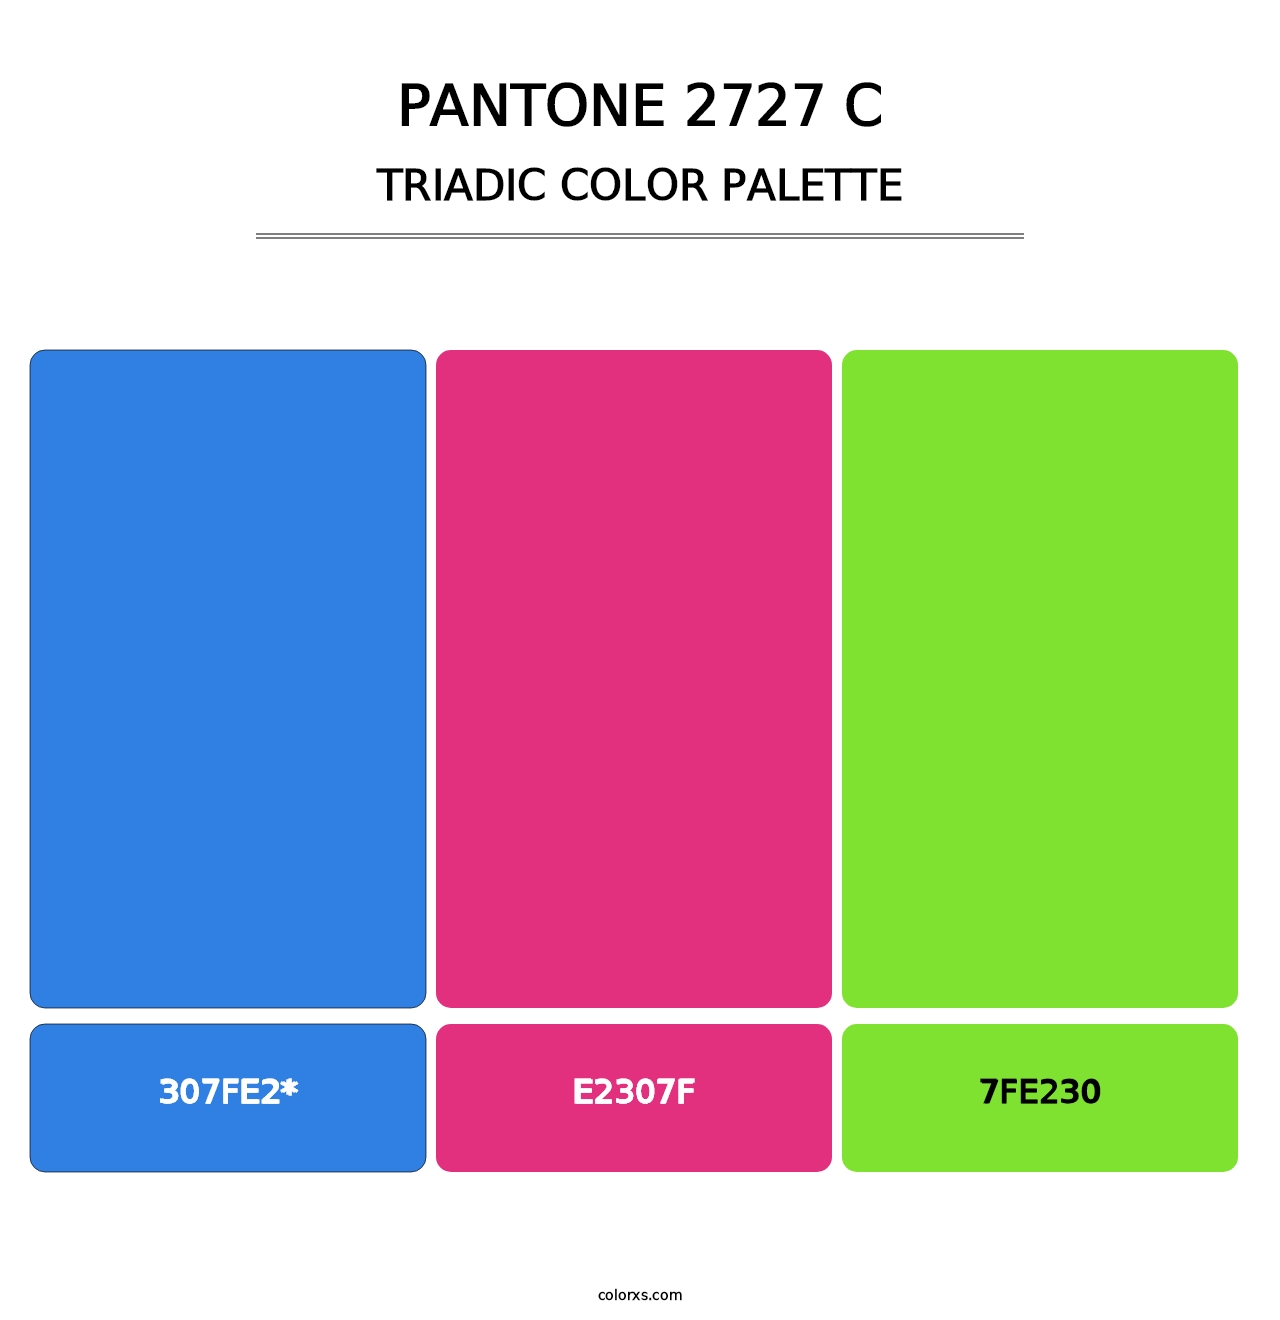 PANTONE 2727 C - Triadic Color Palette